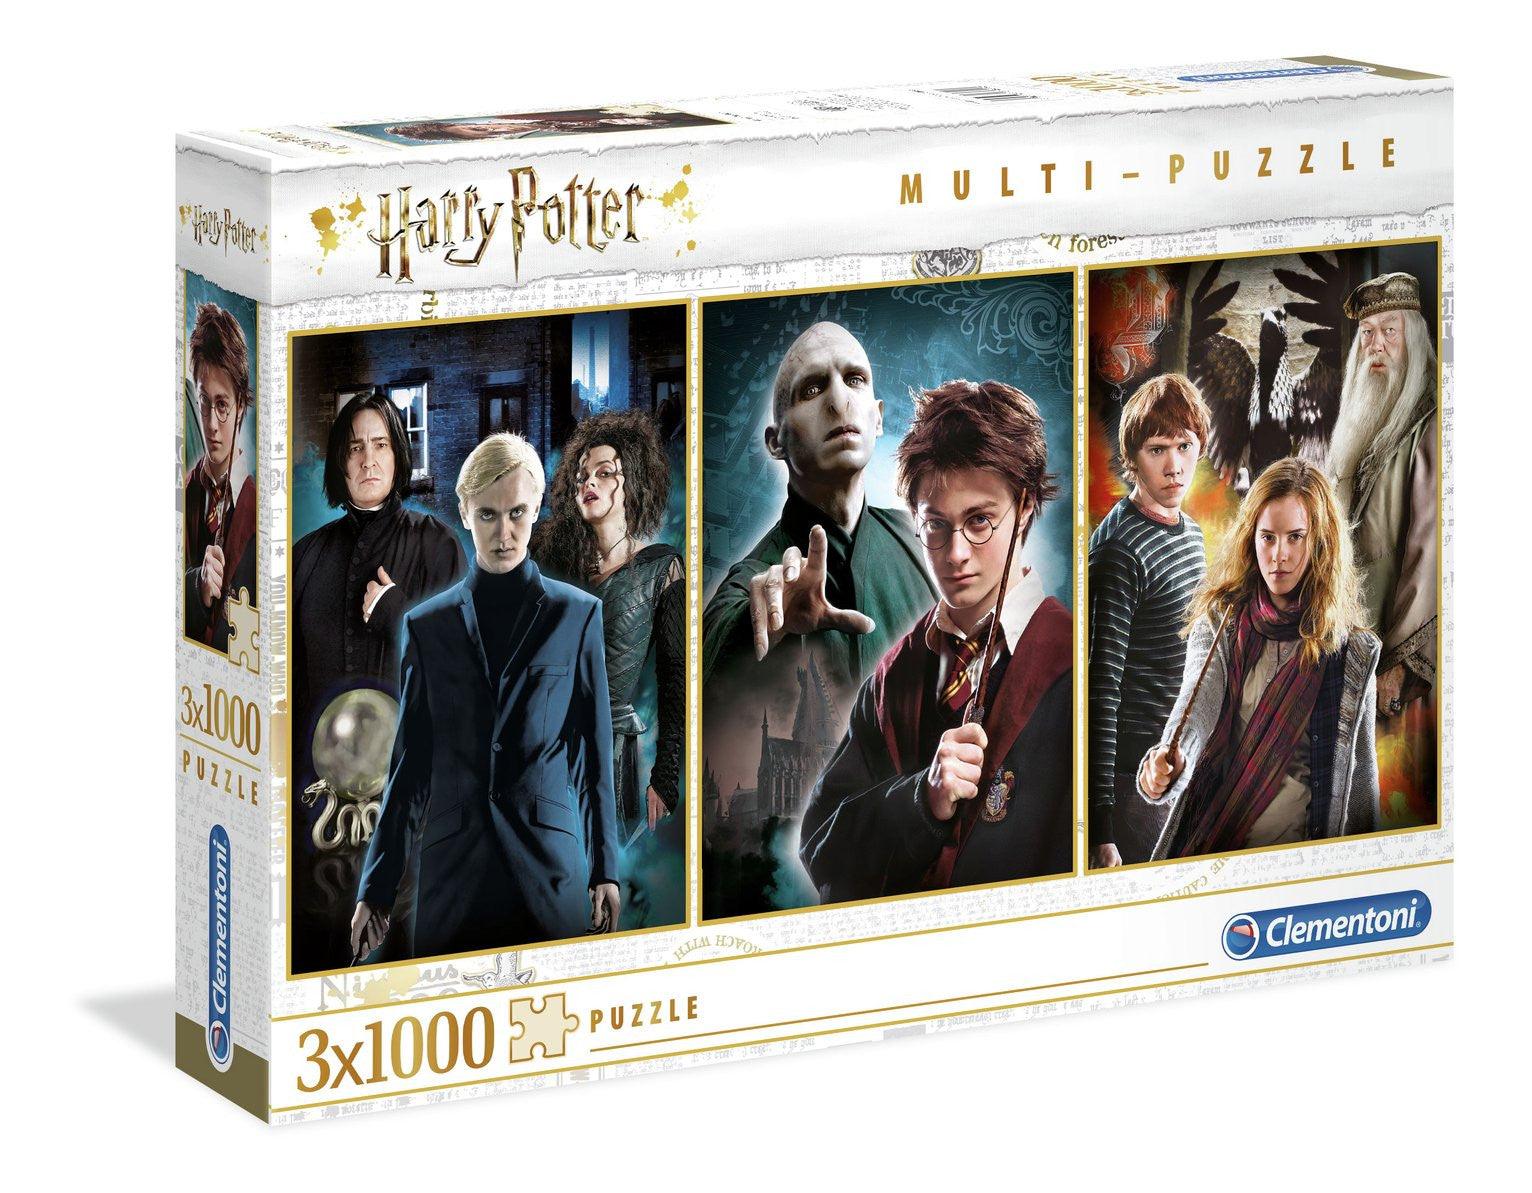 VR-80670 Clementoni Puzzle Harry Potter 3 Pack Puzzle 1,000 pieces each - Clementoni - Titan Pop Culture